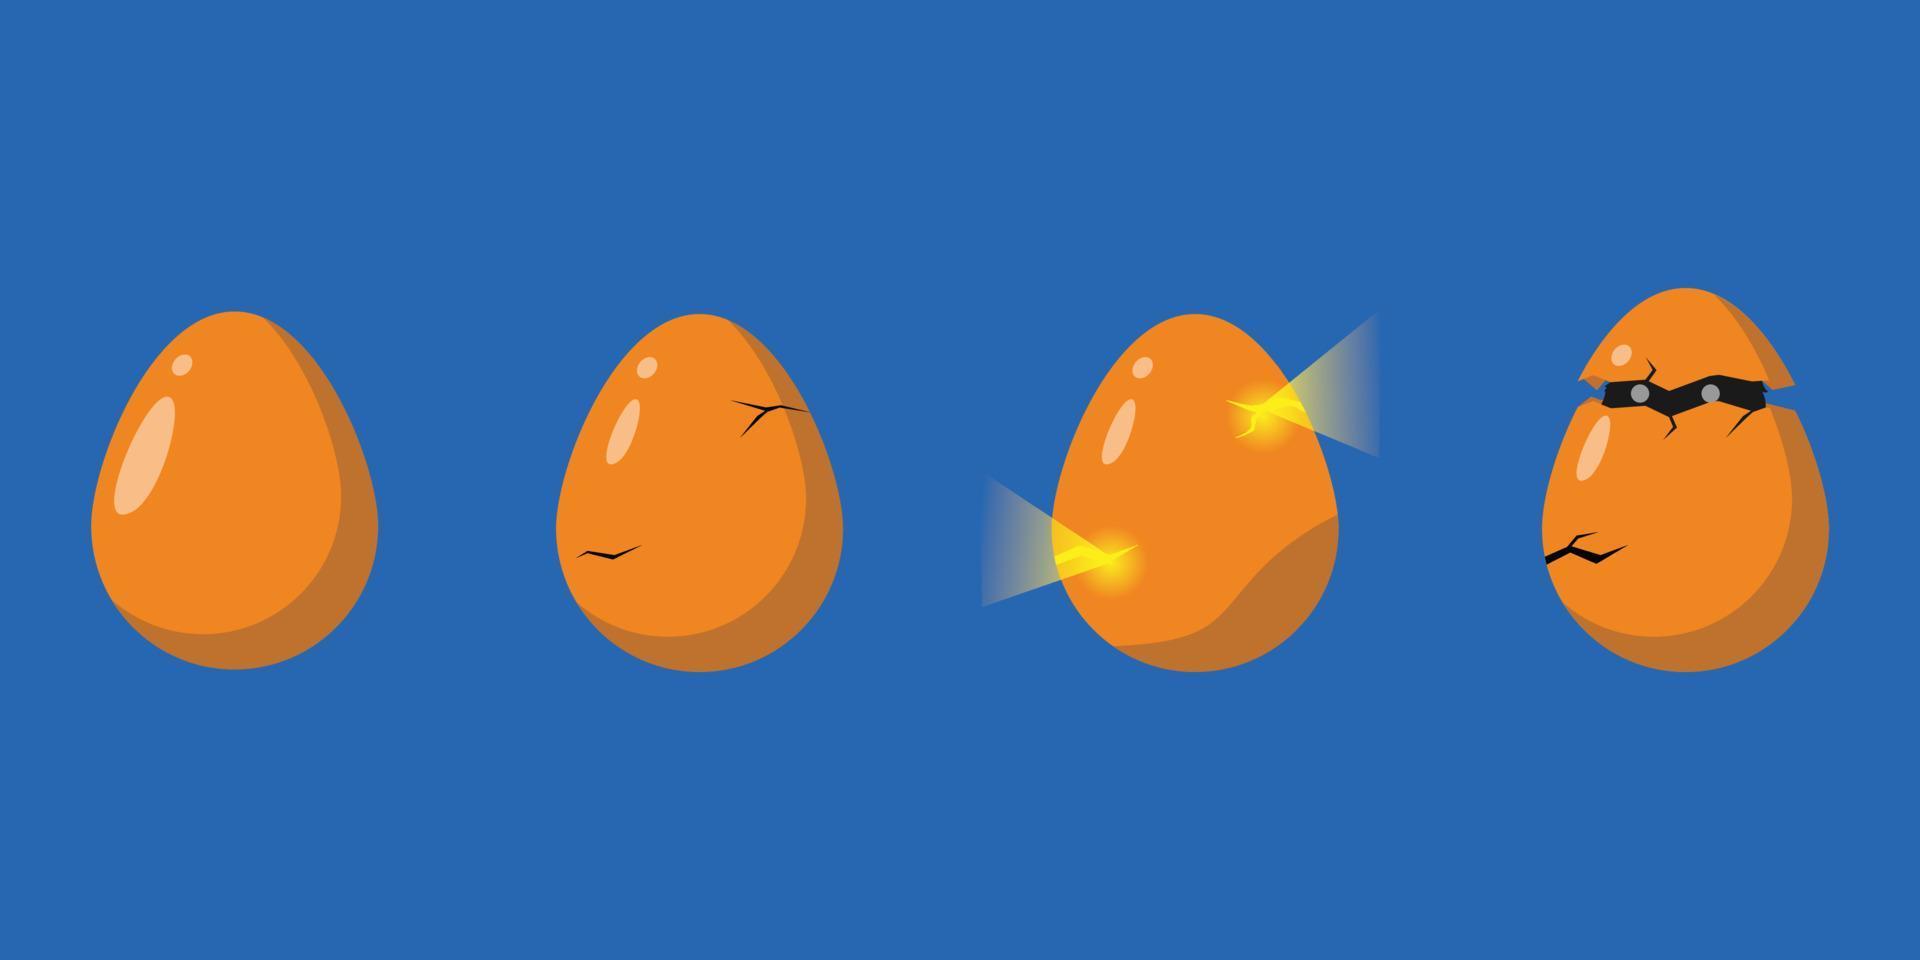 Ponga los huevos en el icono de huevo agrietado ilustración vectorial EPS10 vector